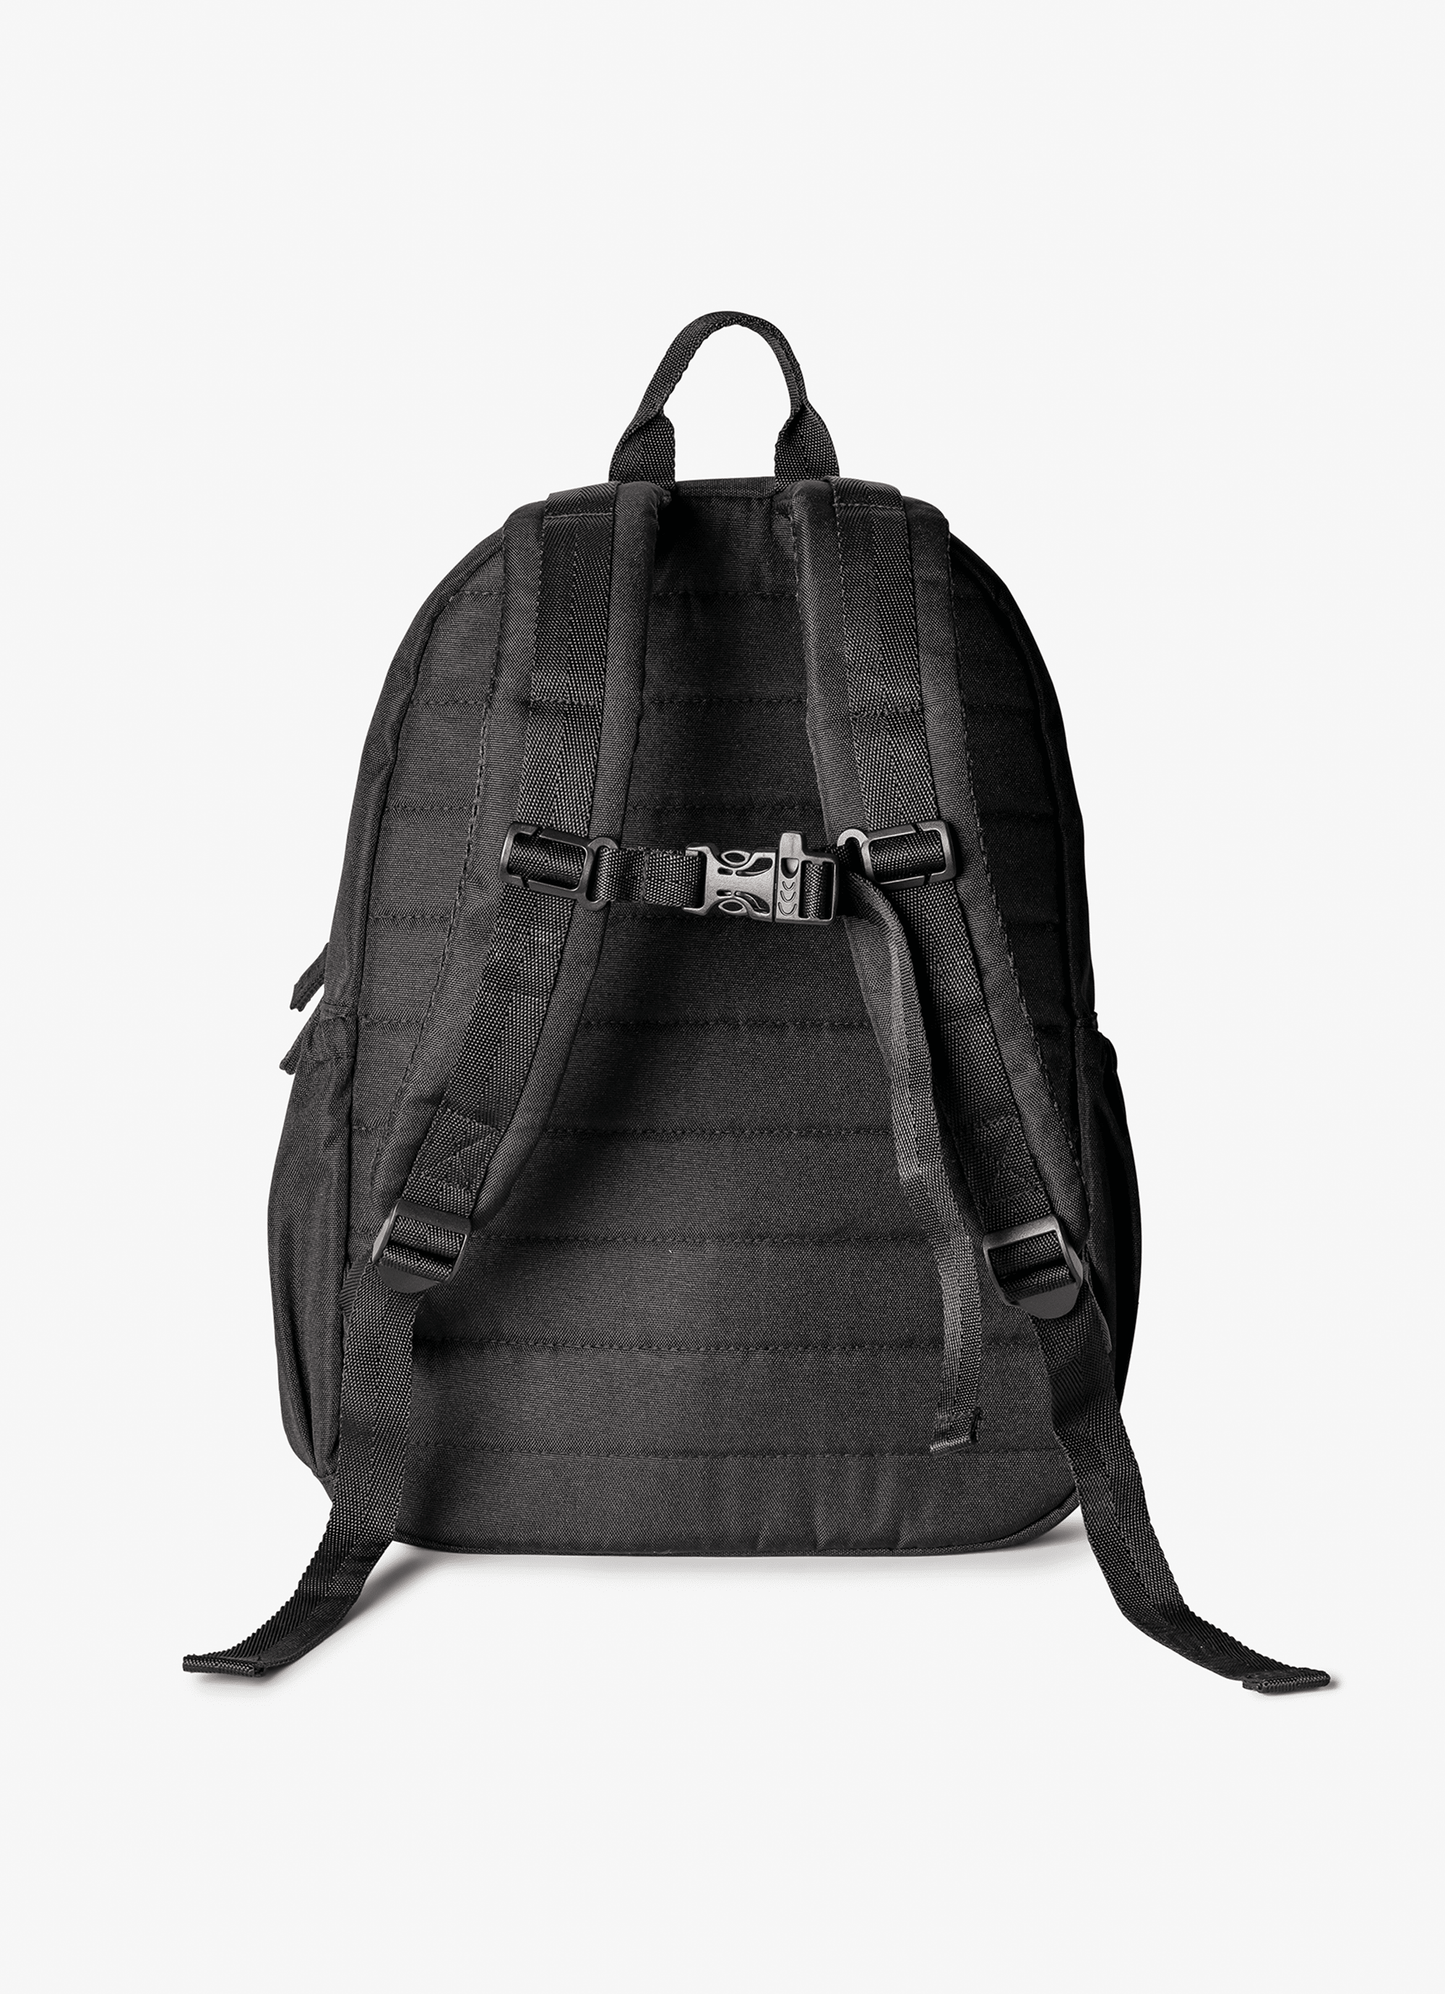 Grand Backpack - Black